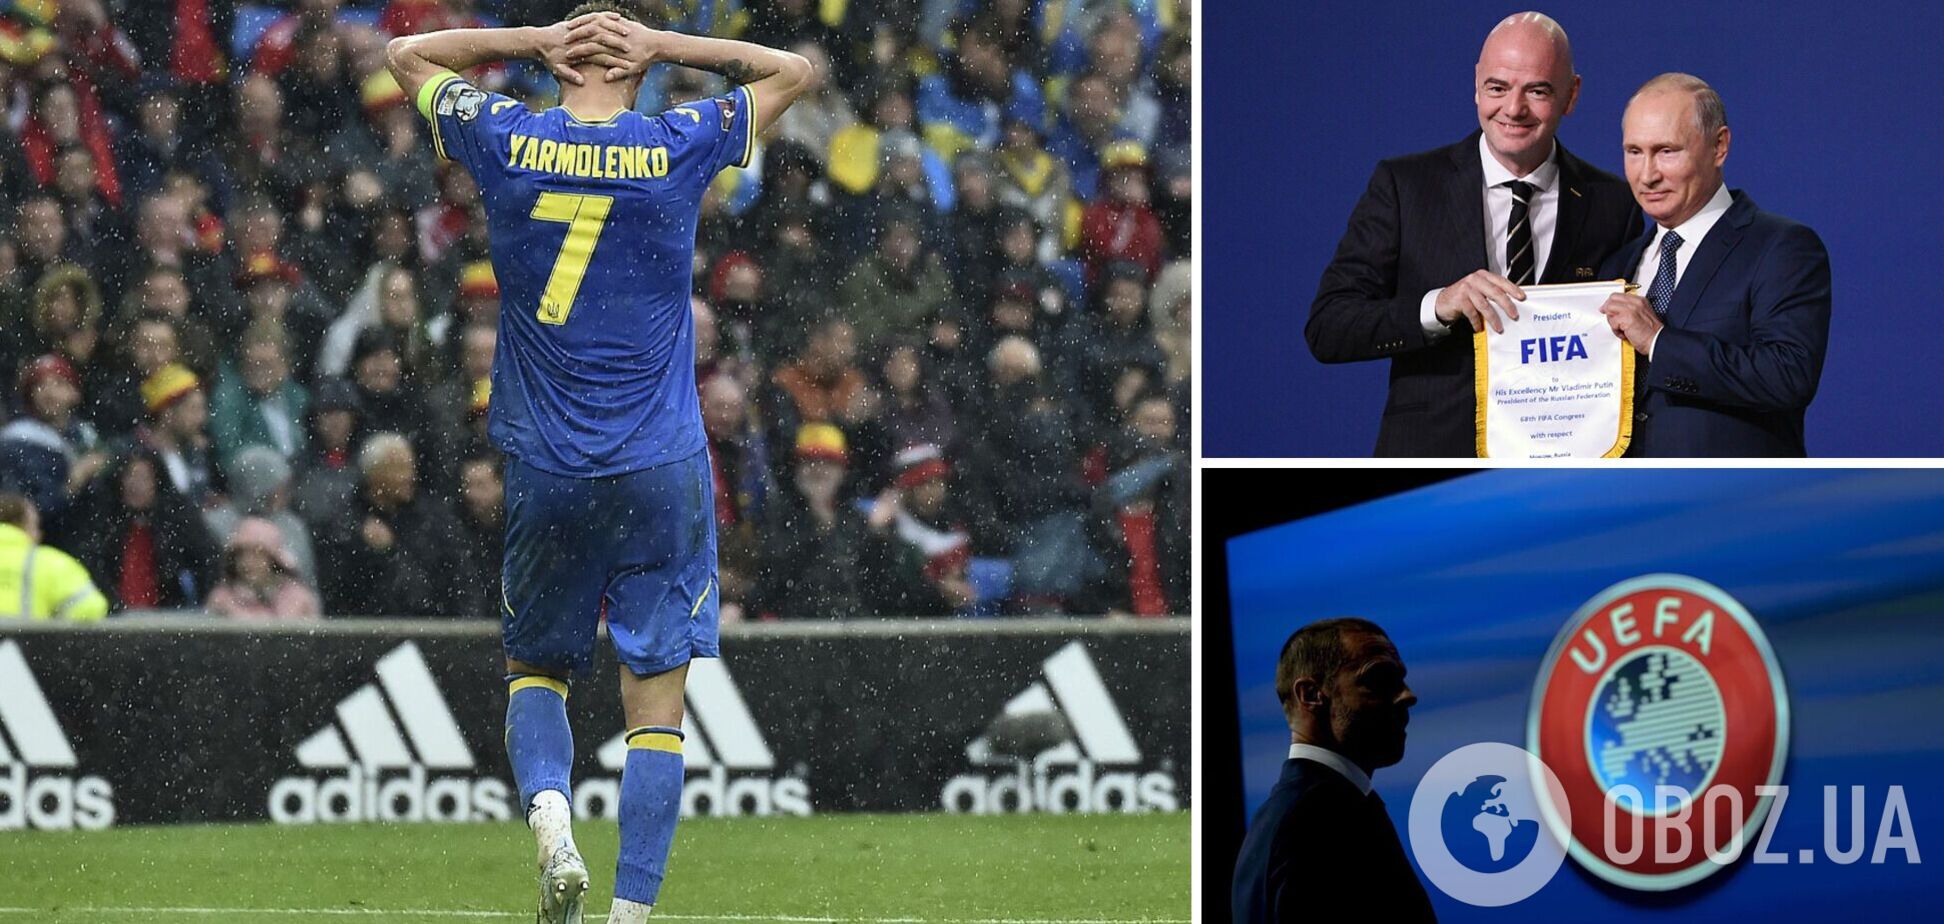 ФІФА та УЄФА пригрозили відсторонити Україну: деталі скандалу